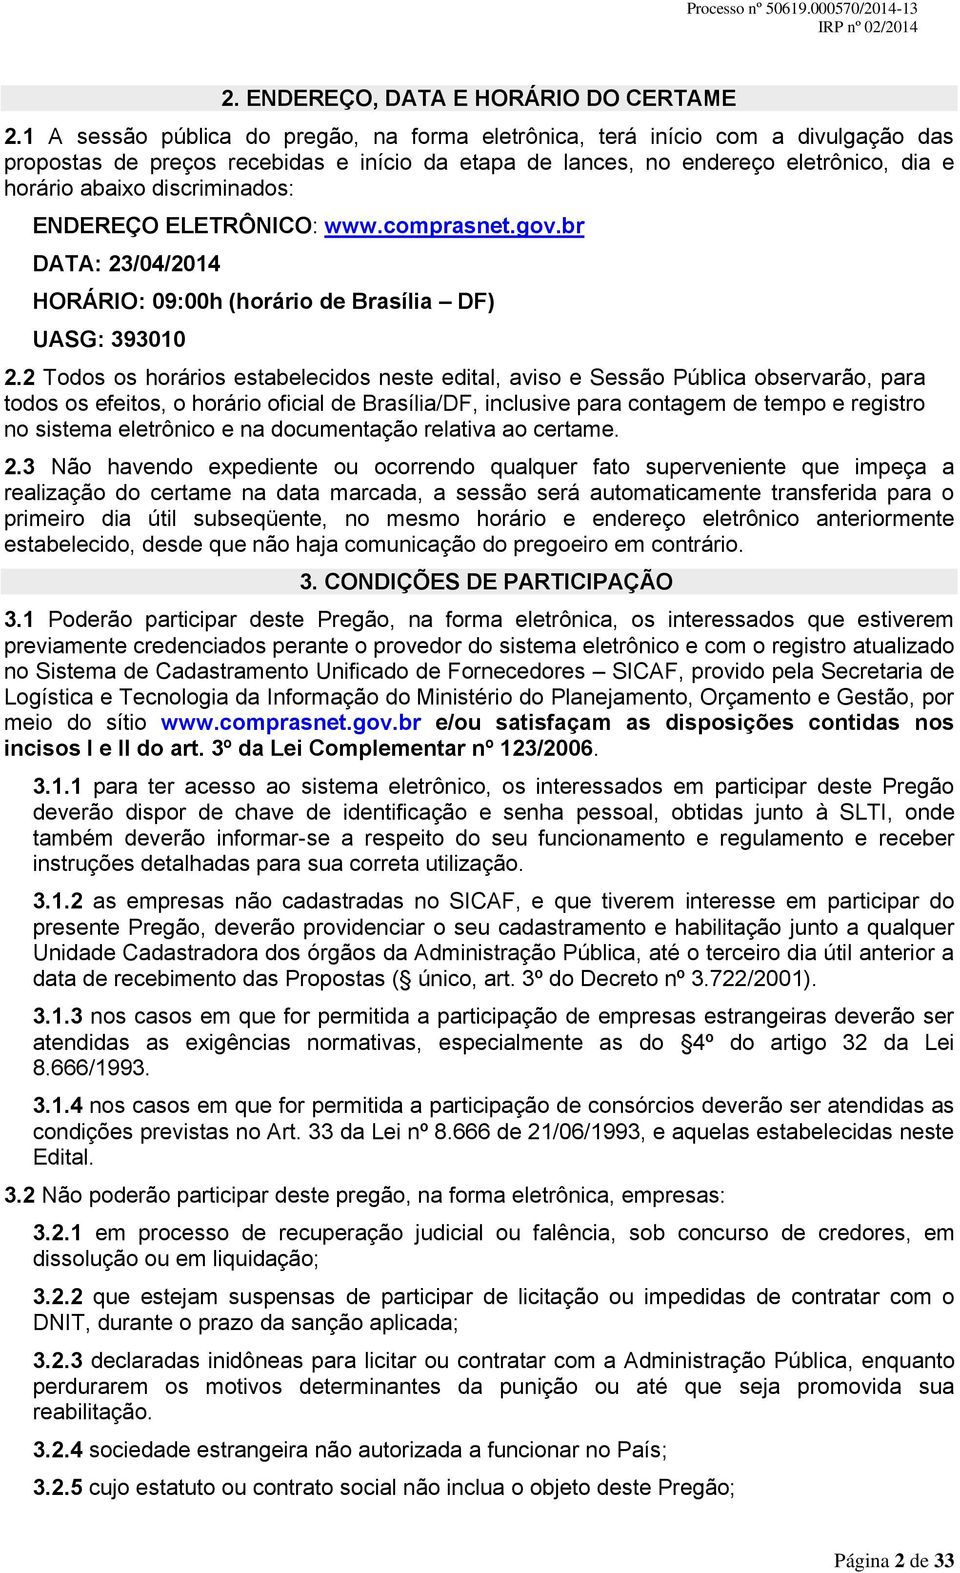 discriminados: ENDEREÇO ELETRÔNICO: www.comprasnet.gov.br DATA: 23/04/2014 HORÁRIO: 09:00h (horário de Brasília DF) UASG: 393010 2.